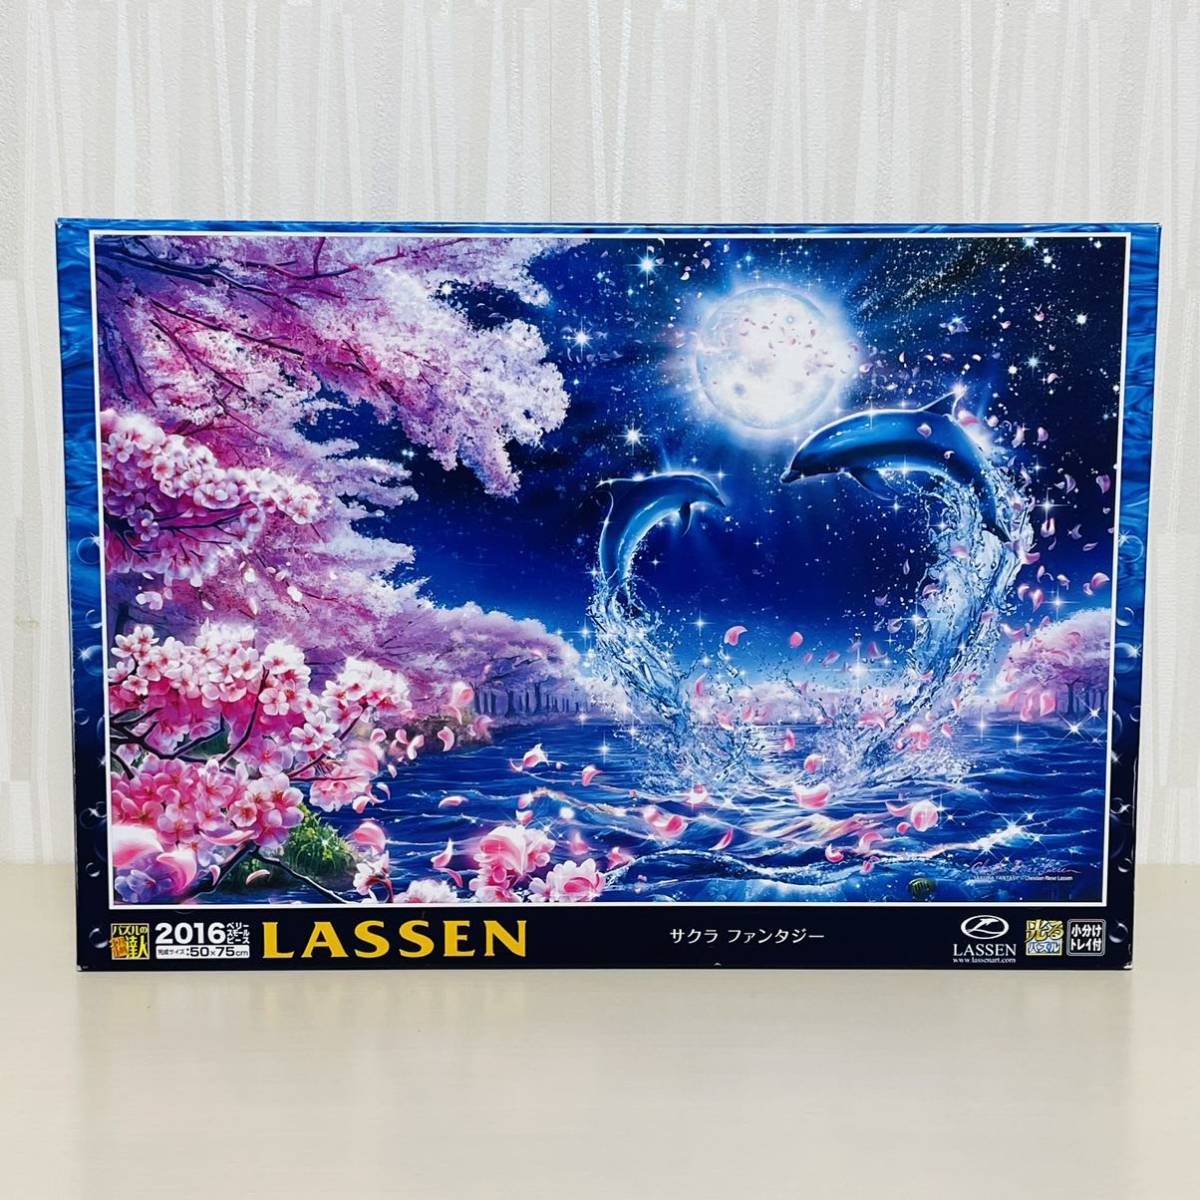 Bolsa interior sin abrir Puzzle Master Jigsaw Puzzle Lassen 2016 Piece Glowing Puzzle Sakura Fantasy Epoch Co., Limitado., juguete, juego, rompecabezas, rompecabezas